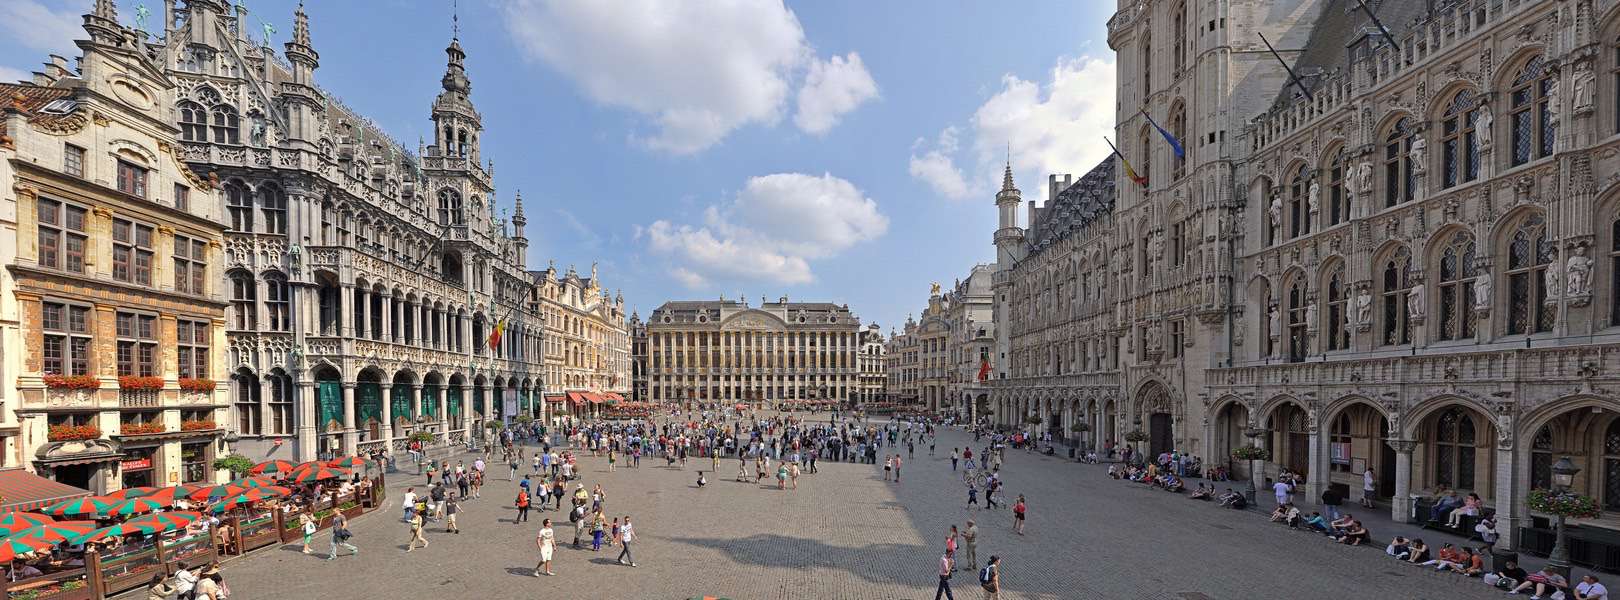 Blick auf den Grand Place in Brüssel der Hauptstadt von Belgien